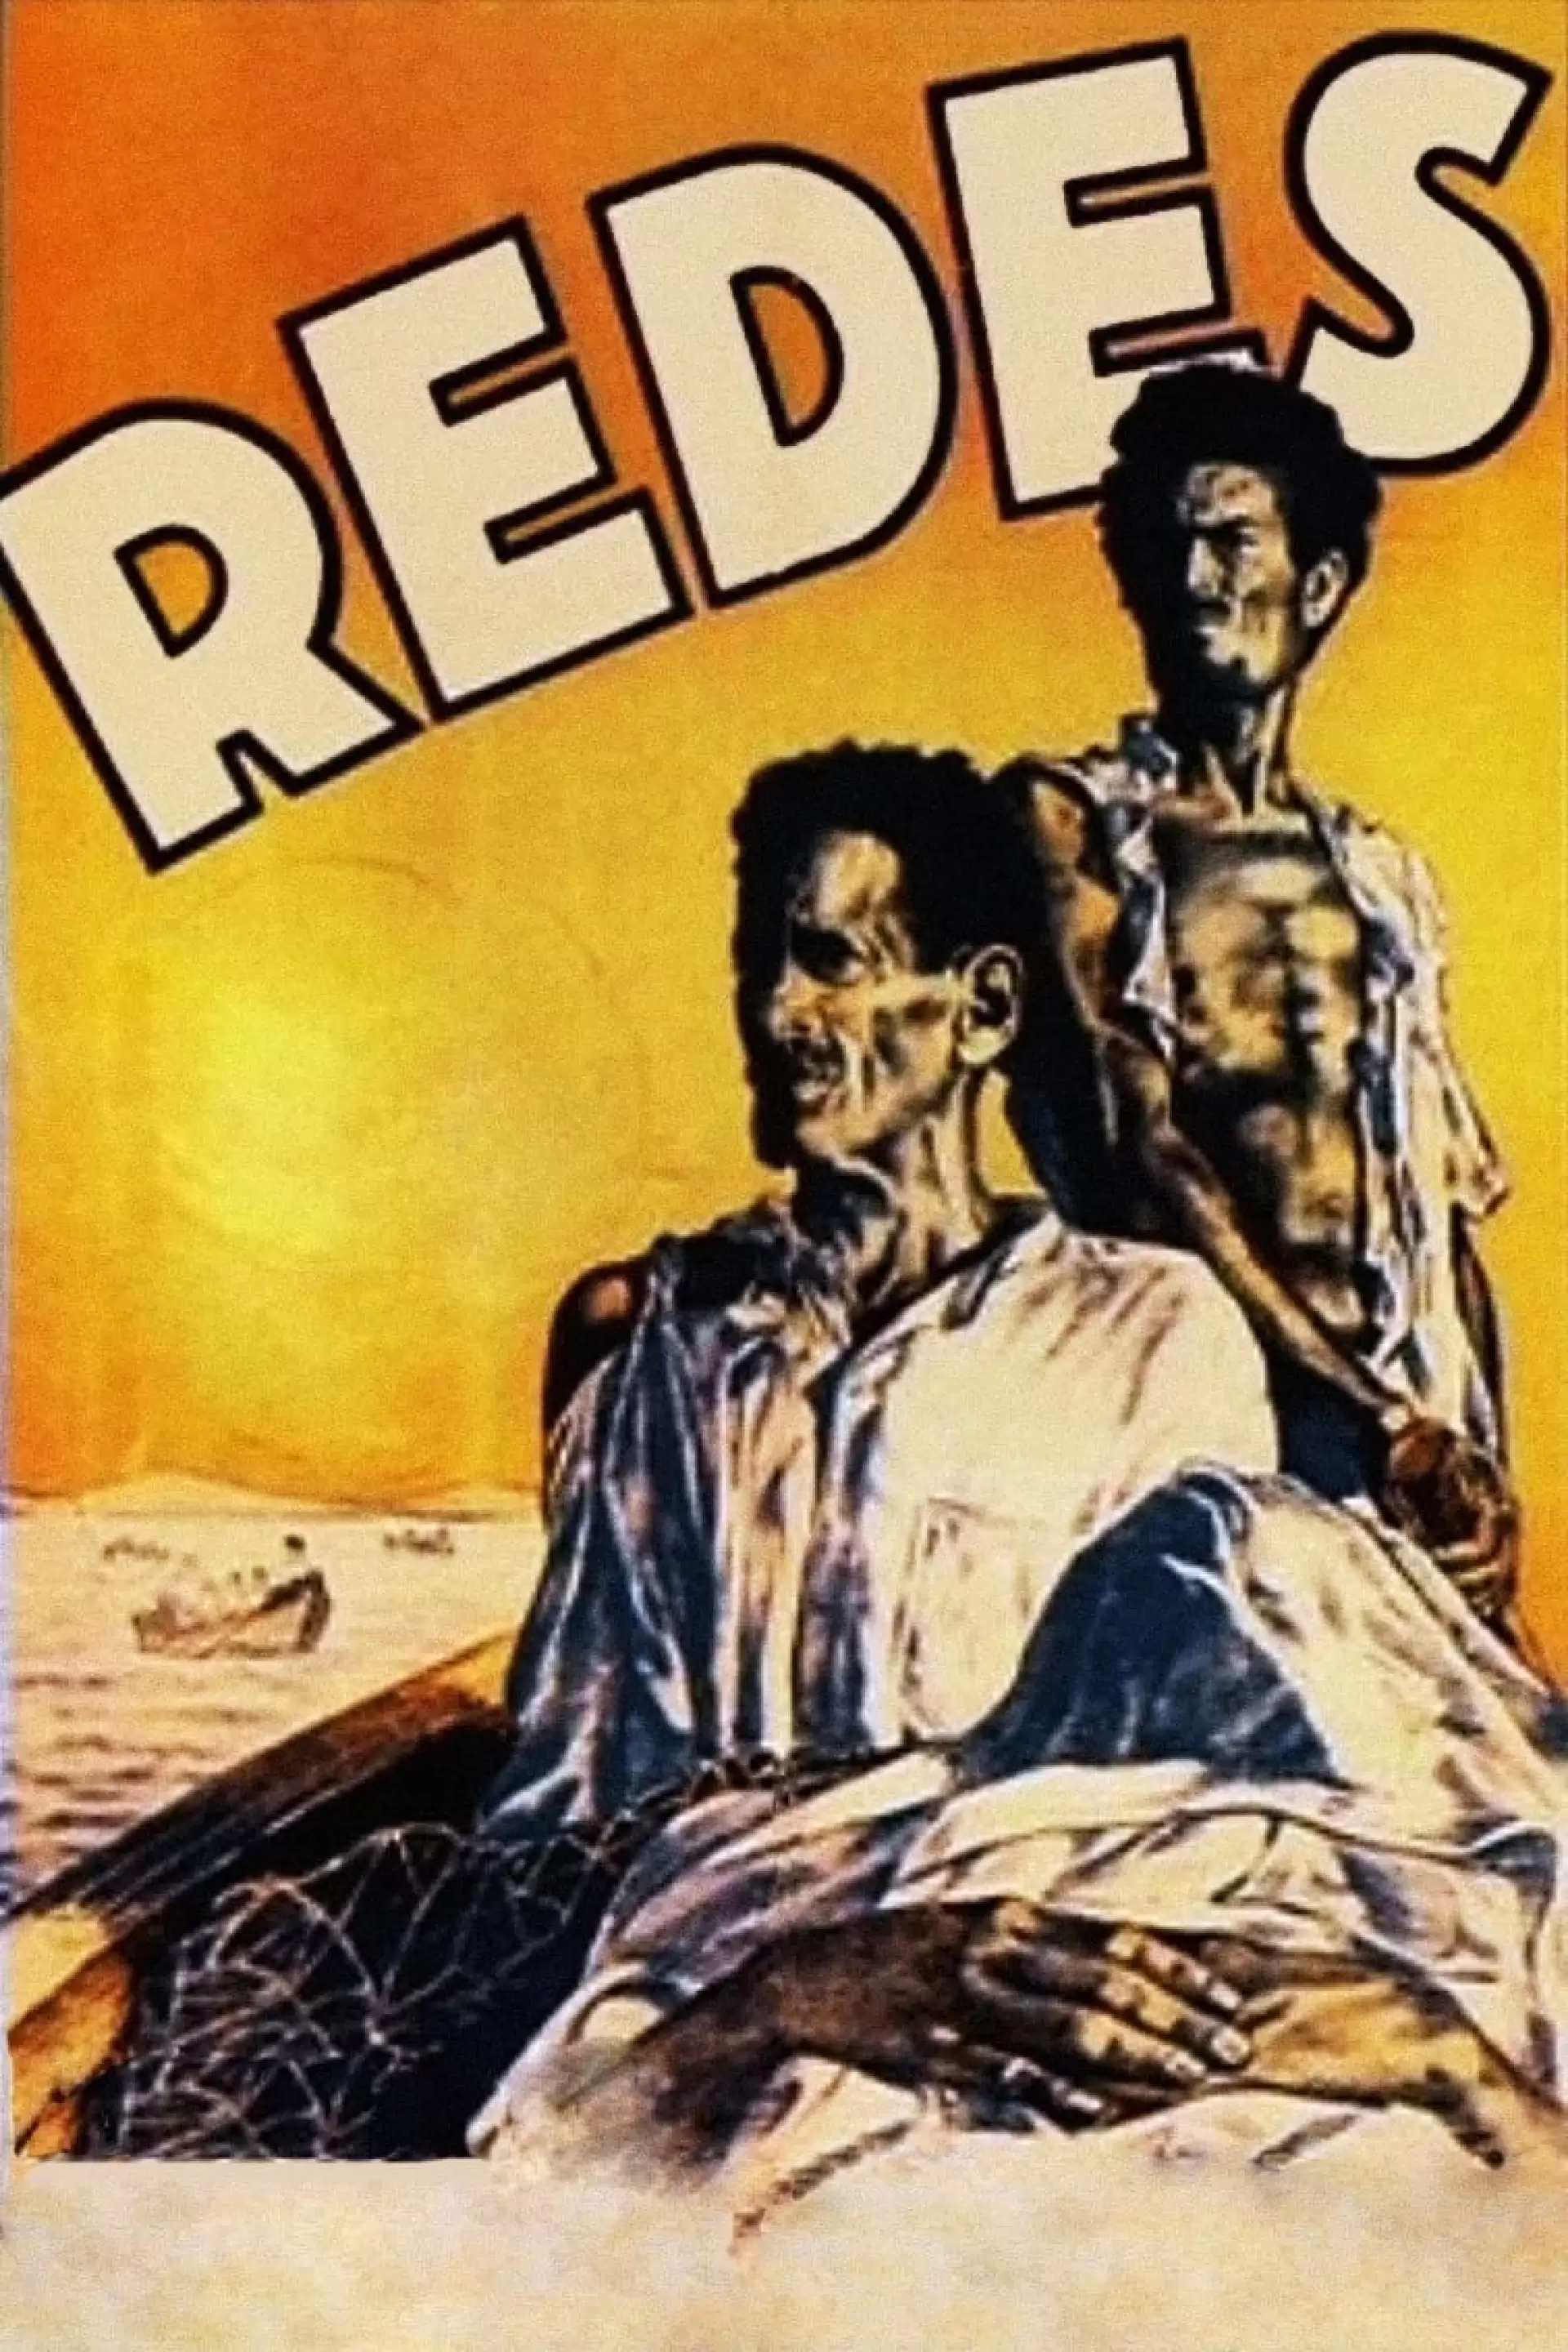 دانلود فیلم Redes 1936 (تورها)